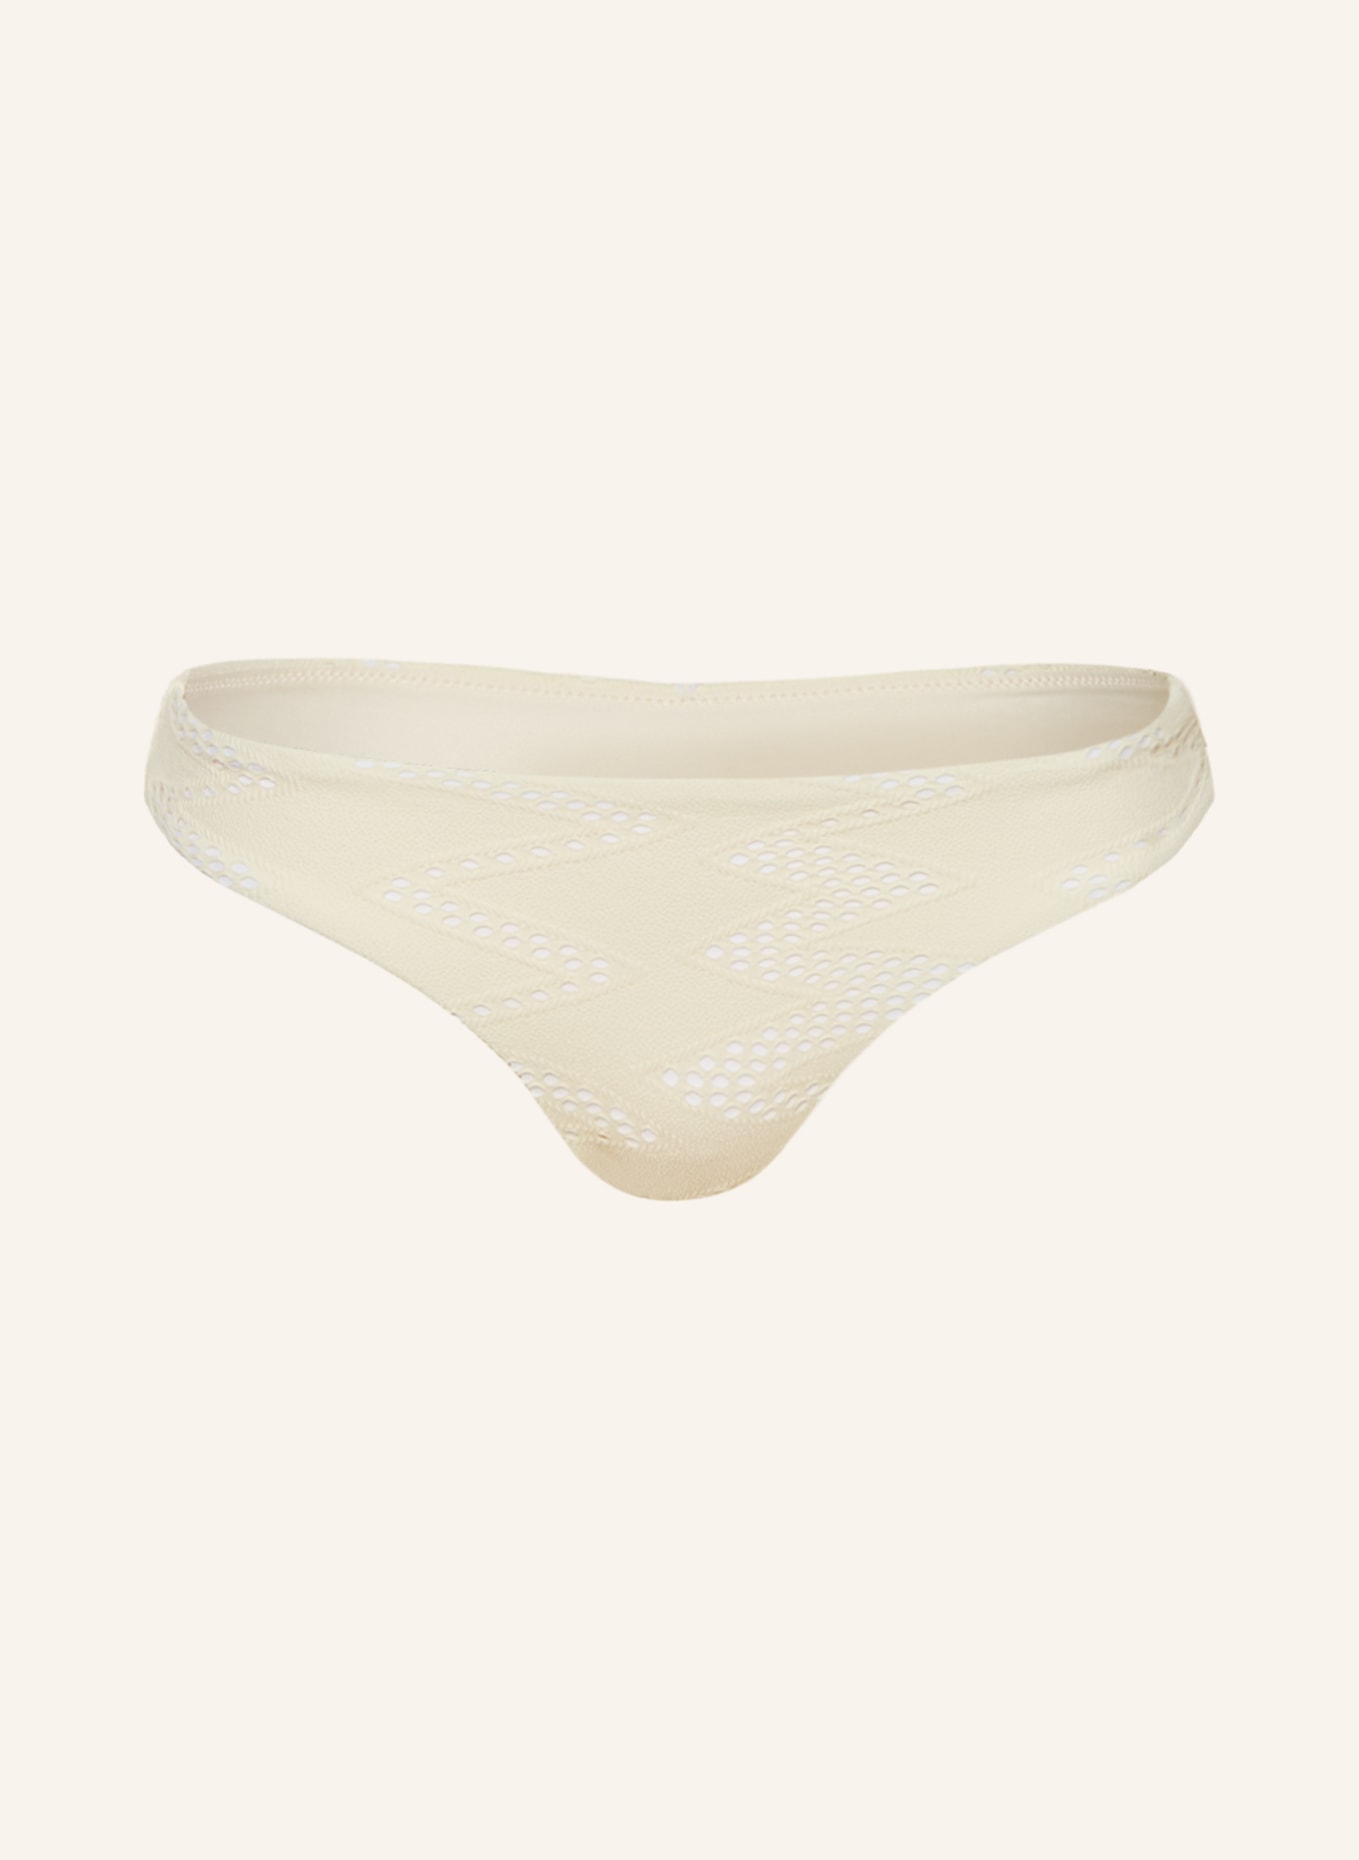 SEAFOLLY Panty bikini bottoms CHIARA, Color: ECRU (Image 1)